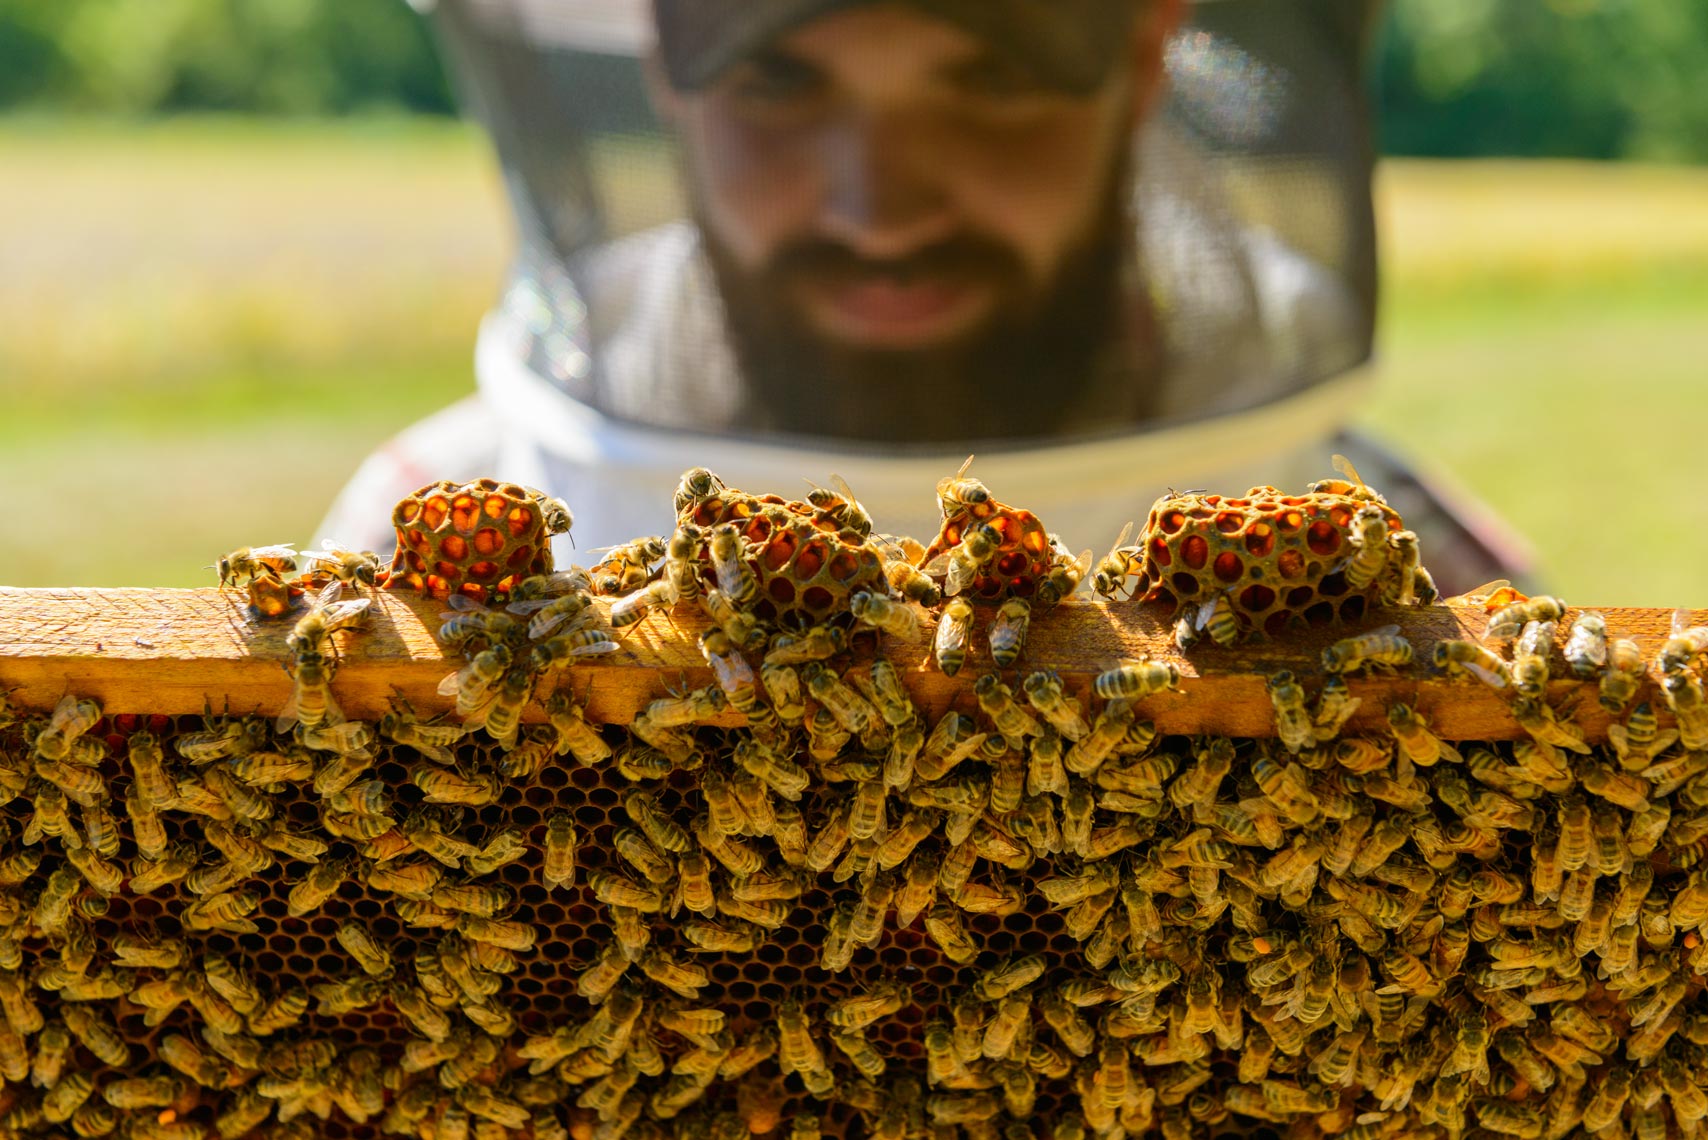 Beekeeping - Bucks County, Pennsylvania - Lifestyle Photographer